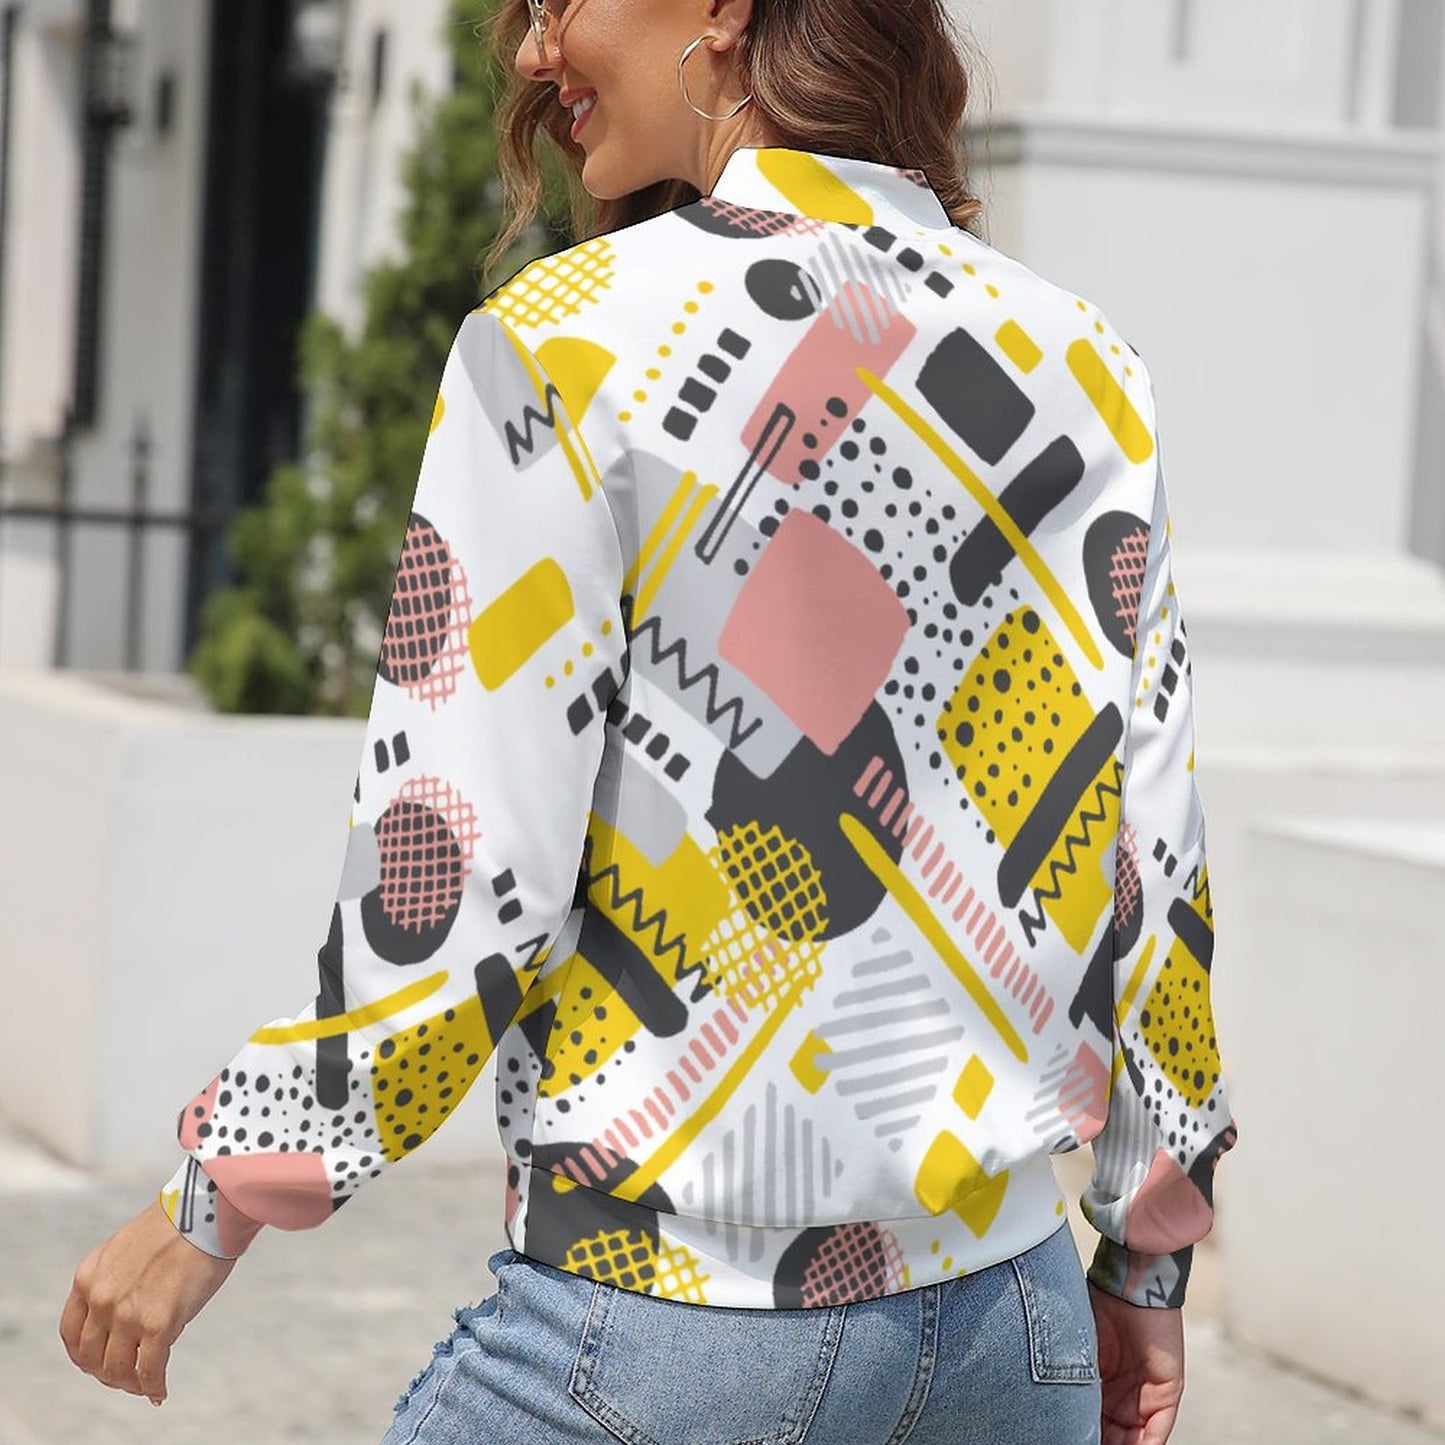 Online DIY Casual Wear for Women Women's Zipper Jacket Geometric Graffiti